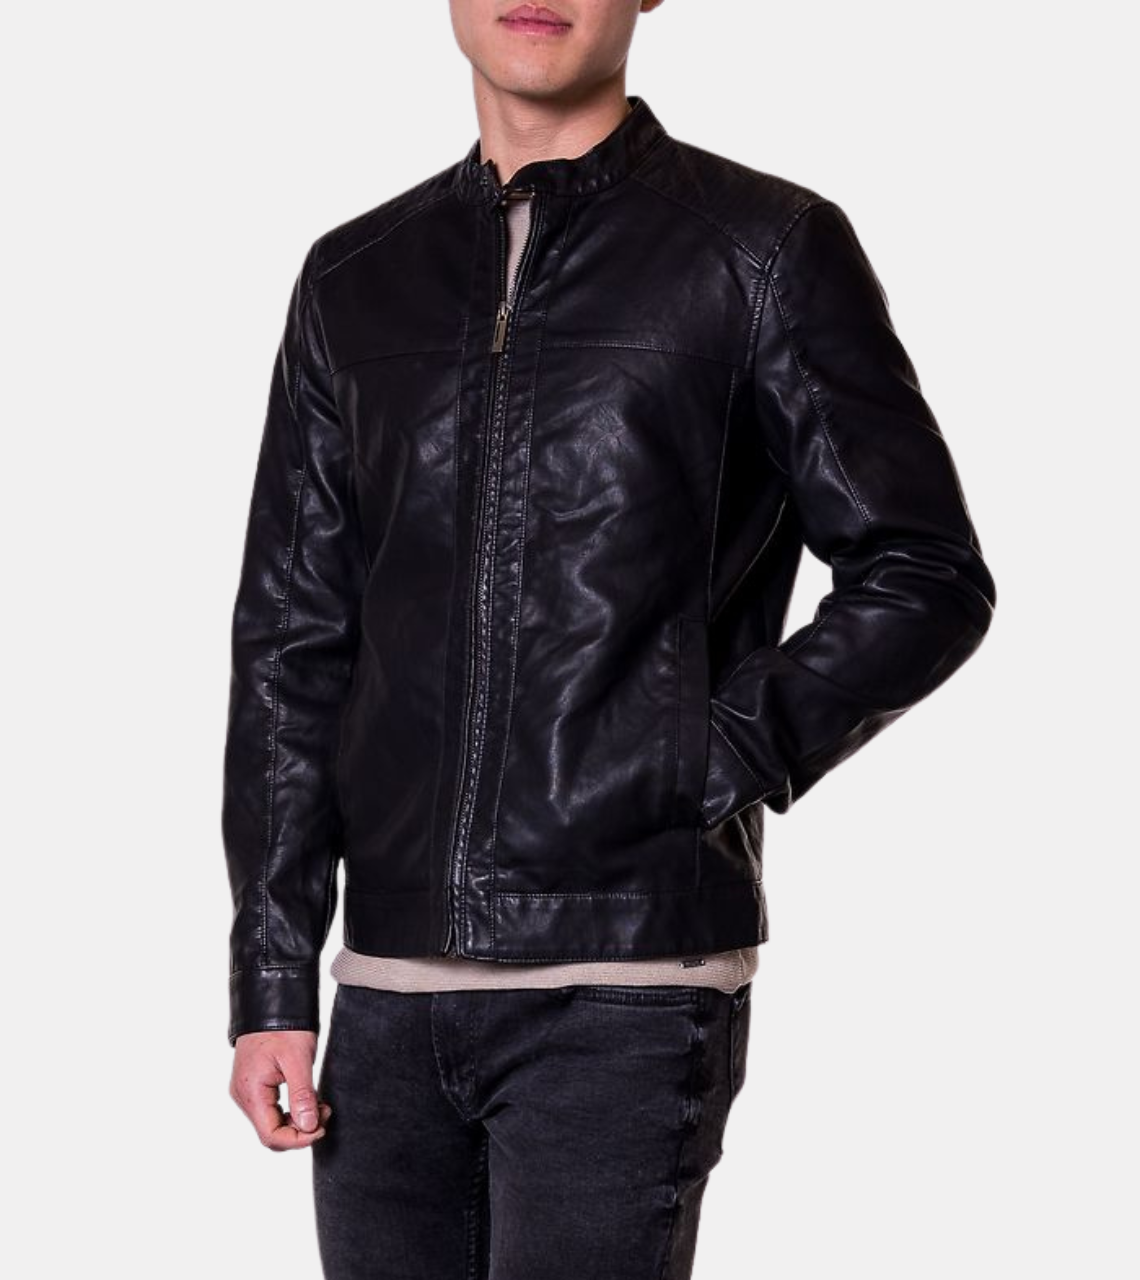  Men's Black Biker Leather Jacket